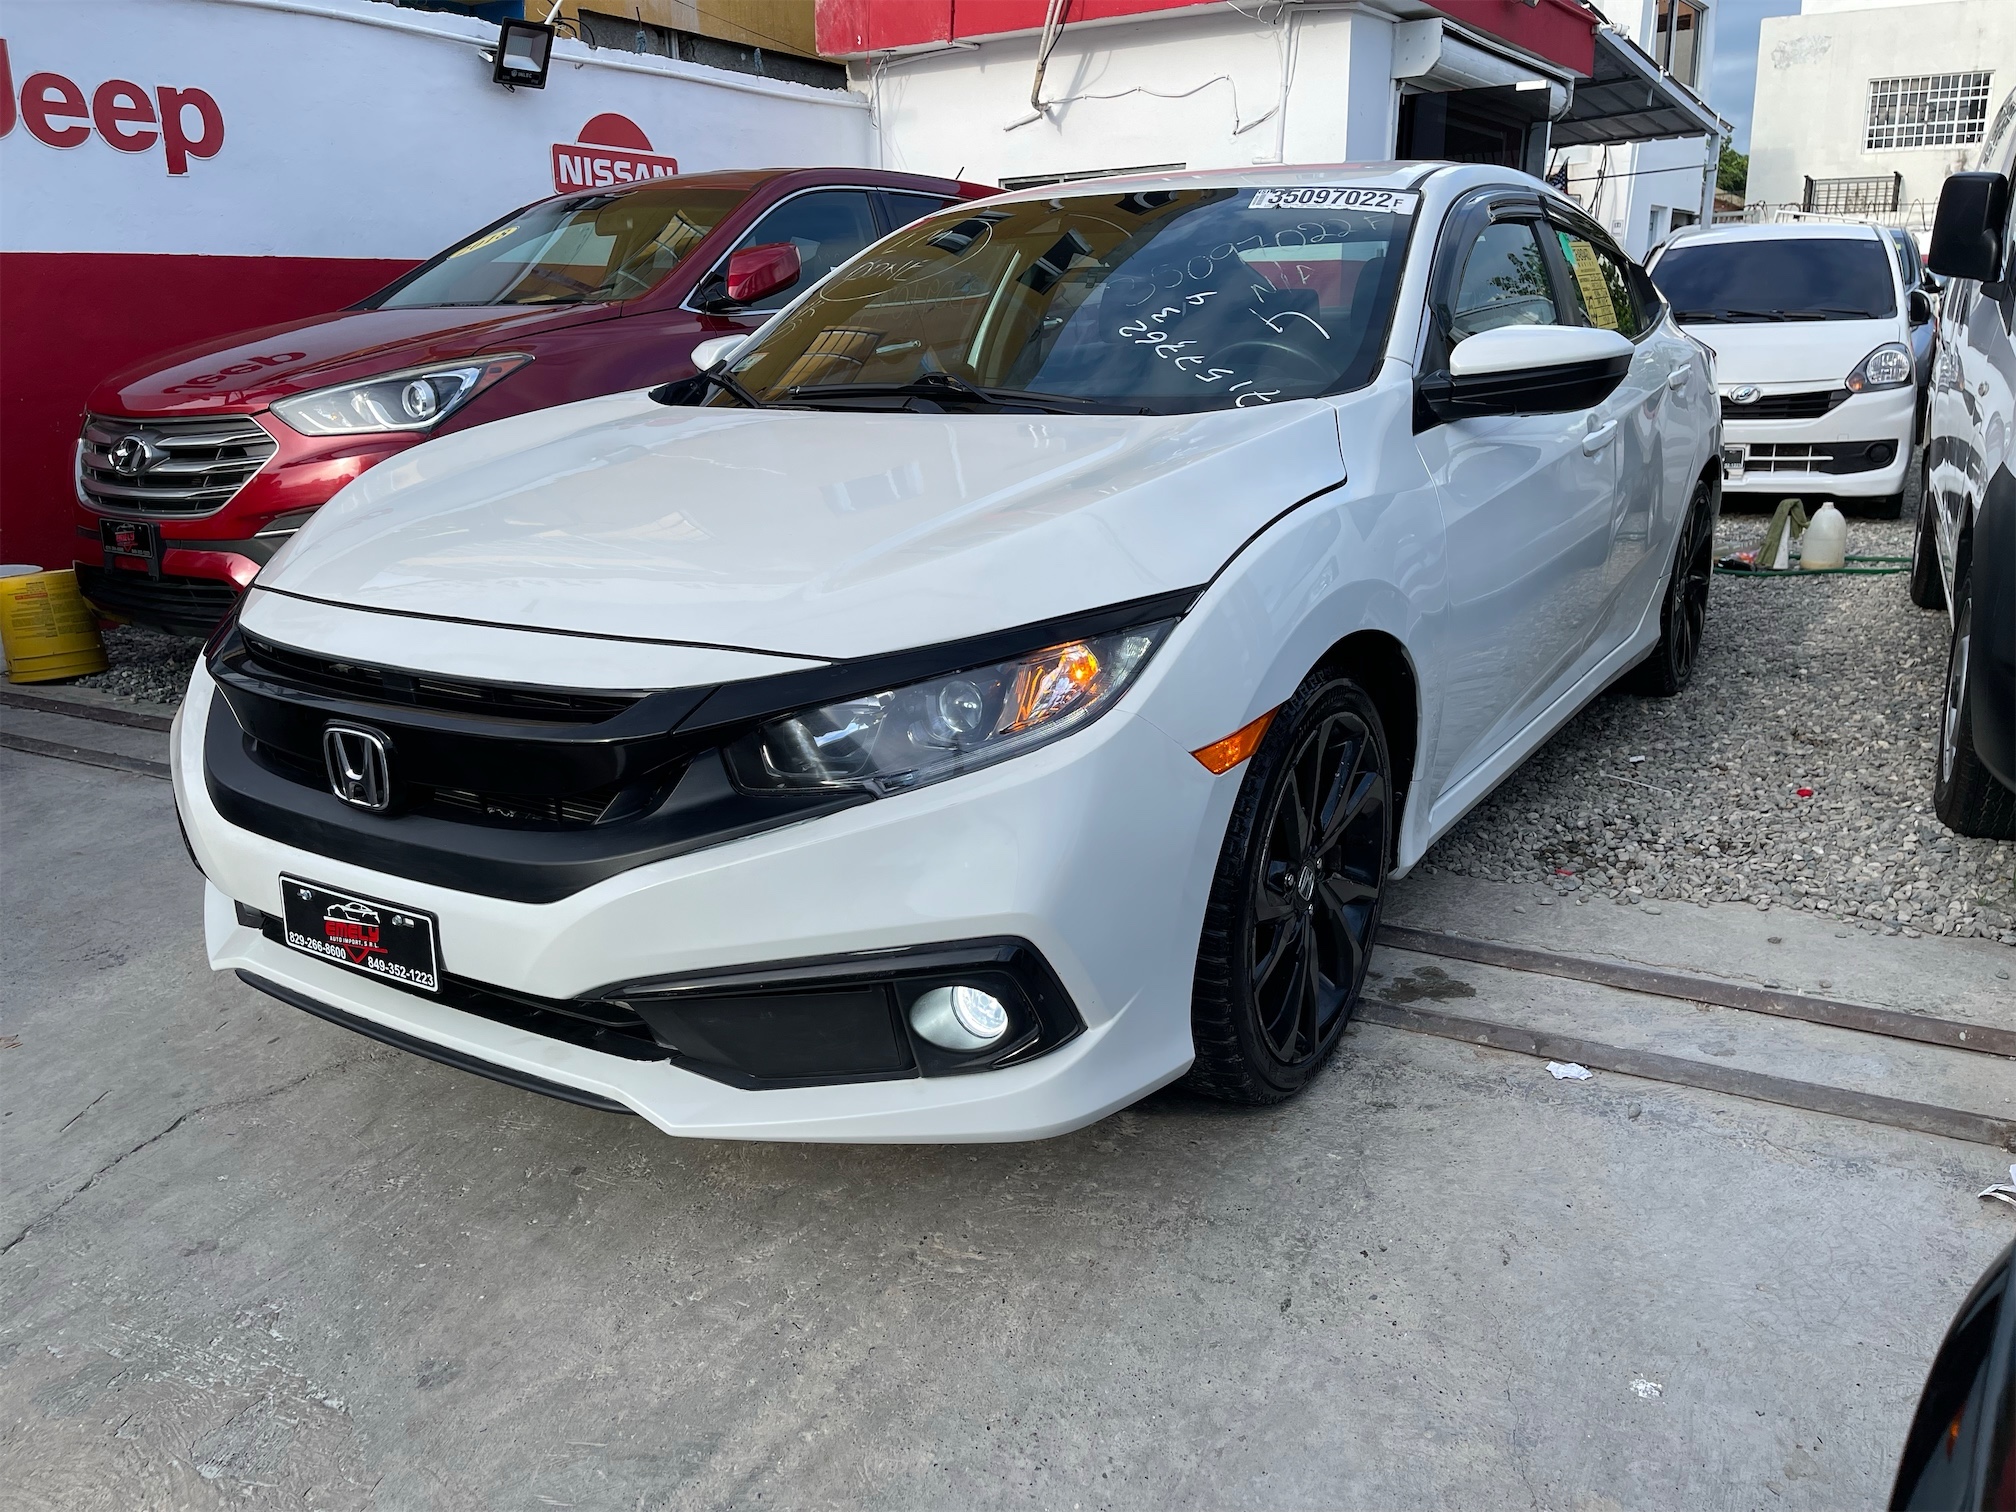 Honda Civic Sport 2019🔥$405,000🚨Financiamiento Disp💸No Importa Crédito💳Rec🚗